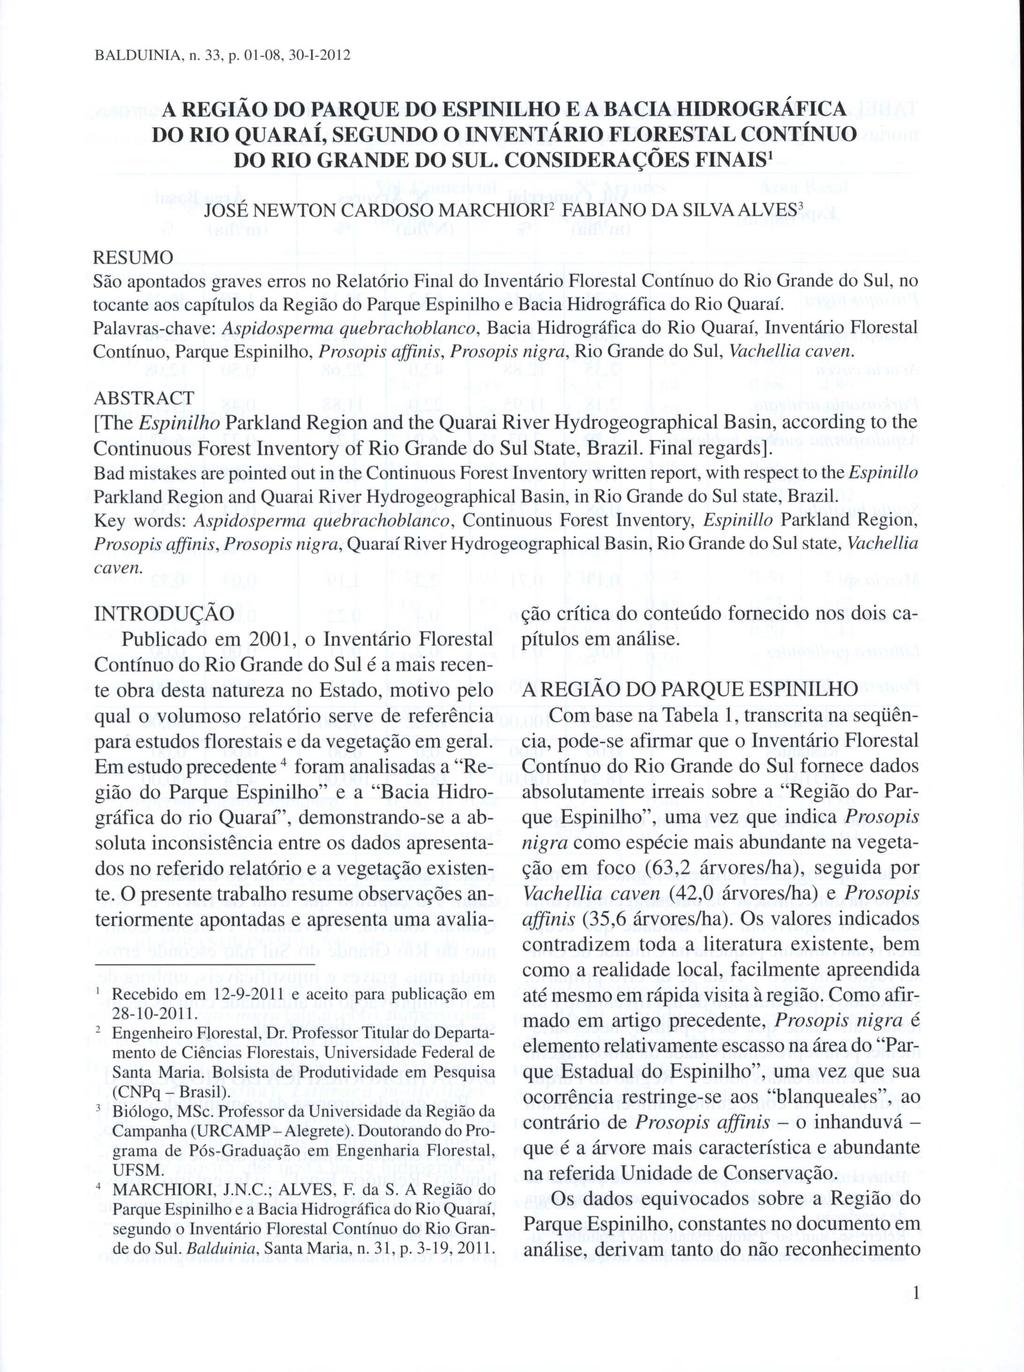 BALDUINIA, n. 33, p. 01-08, 30-1-2012 A REGIÃO DO PARQUE DO ESPINILHO E A BACIA HIDROGRÁFICA DO RIO QUARAÍ, SEGUNDO O INVENTÁRIO FLORESTAL CONTÍNUO DO RIO GRANDE DO SUL.